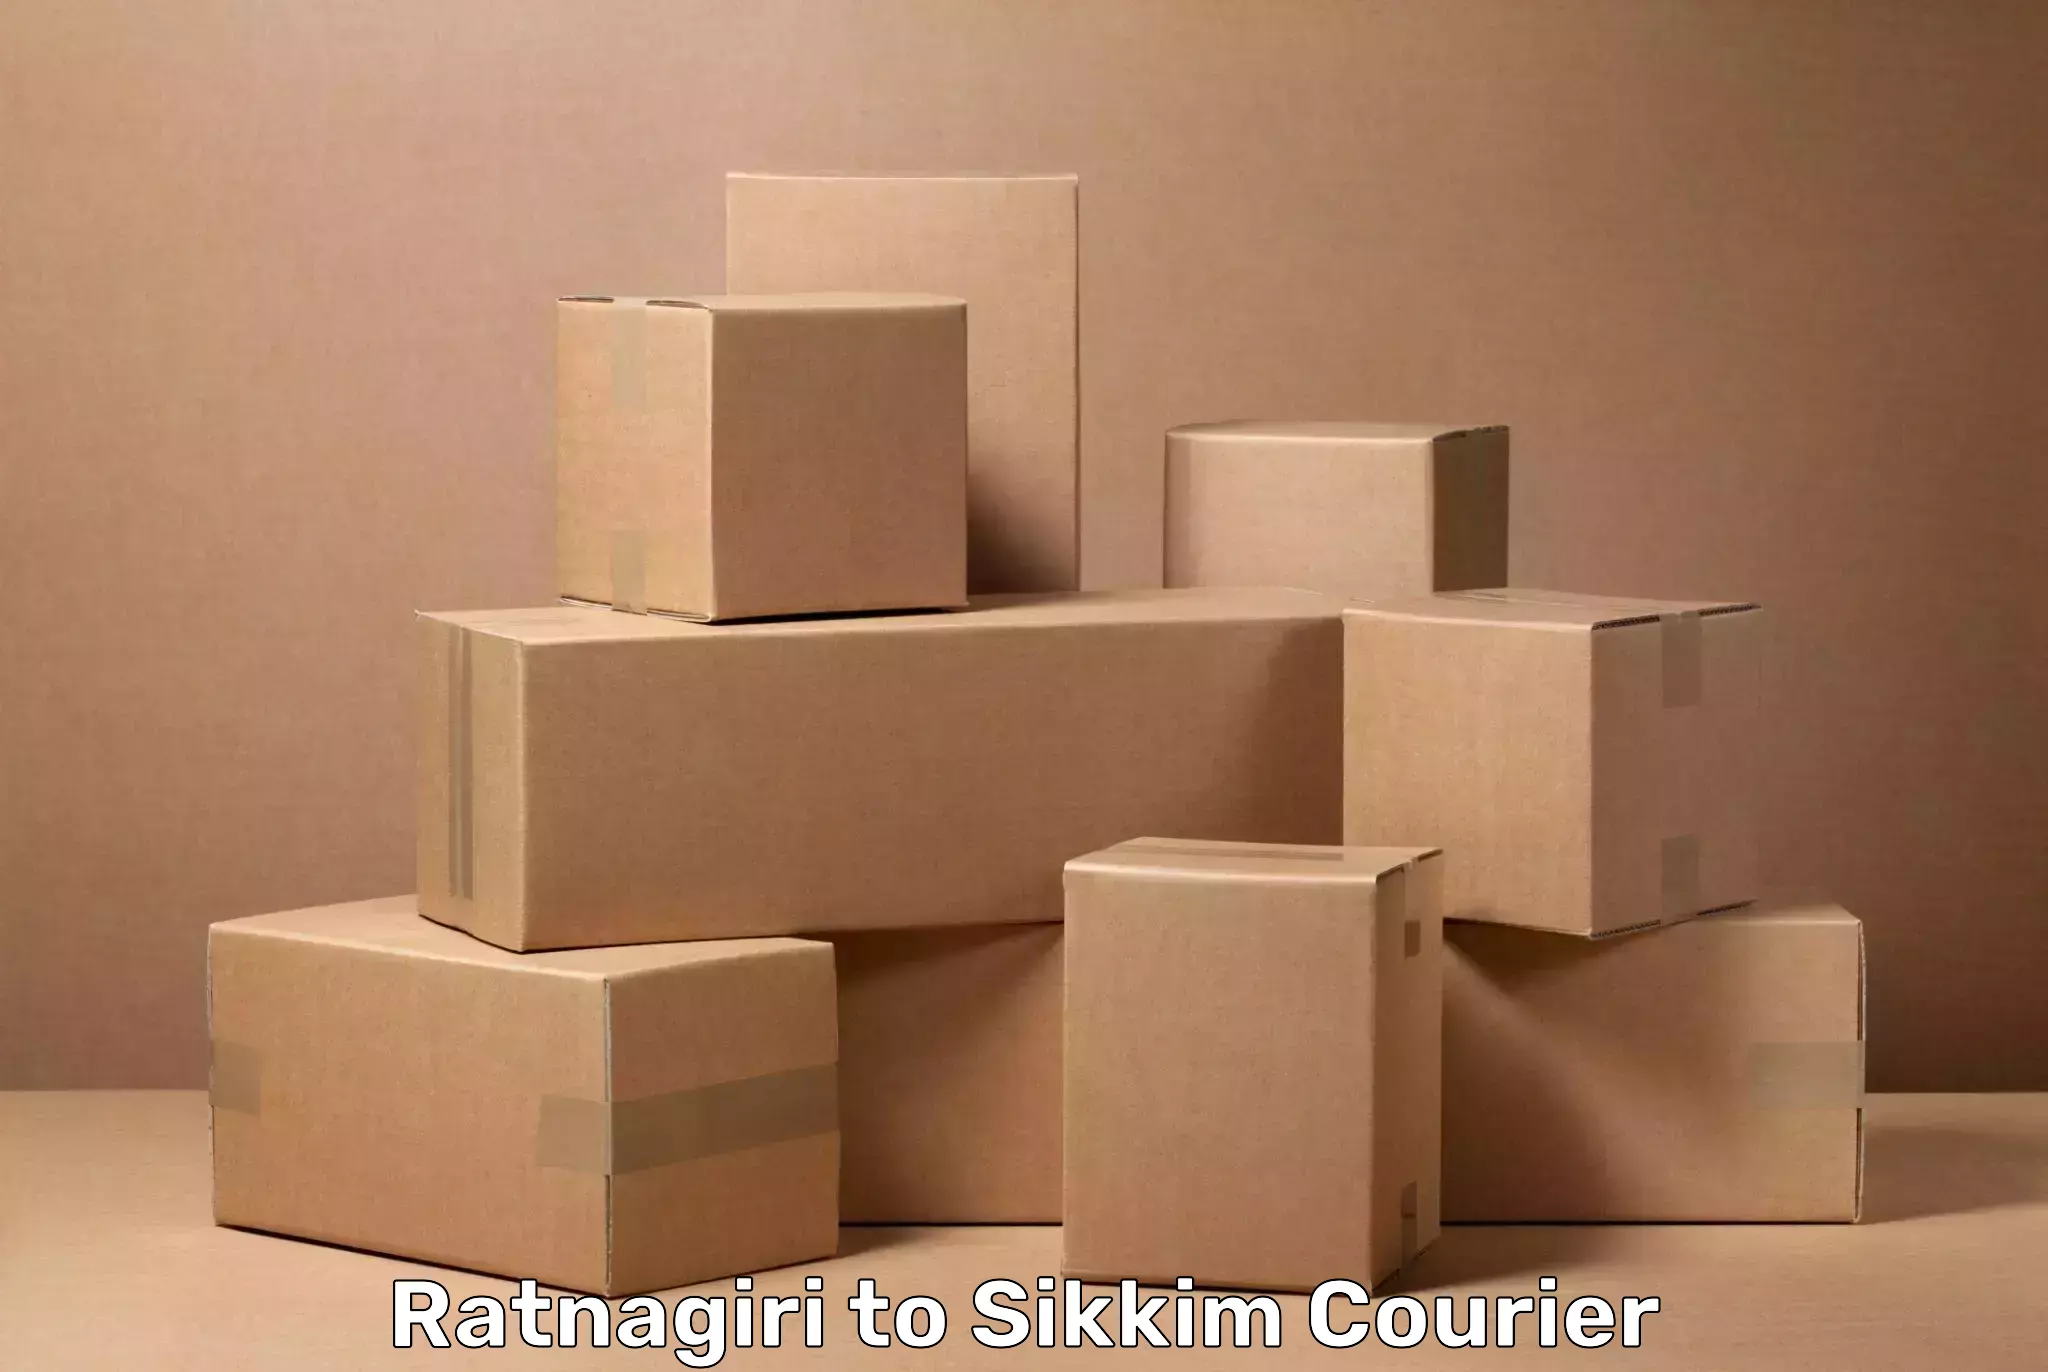 Luggage dispatch service Ratnagiri to Mangan